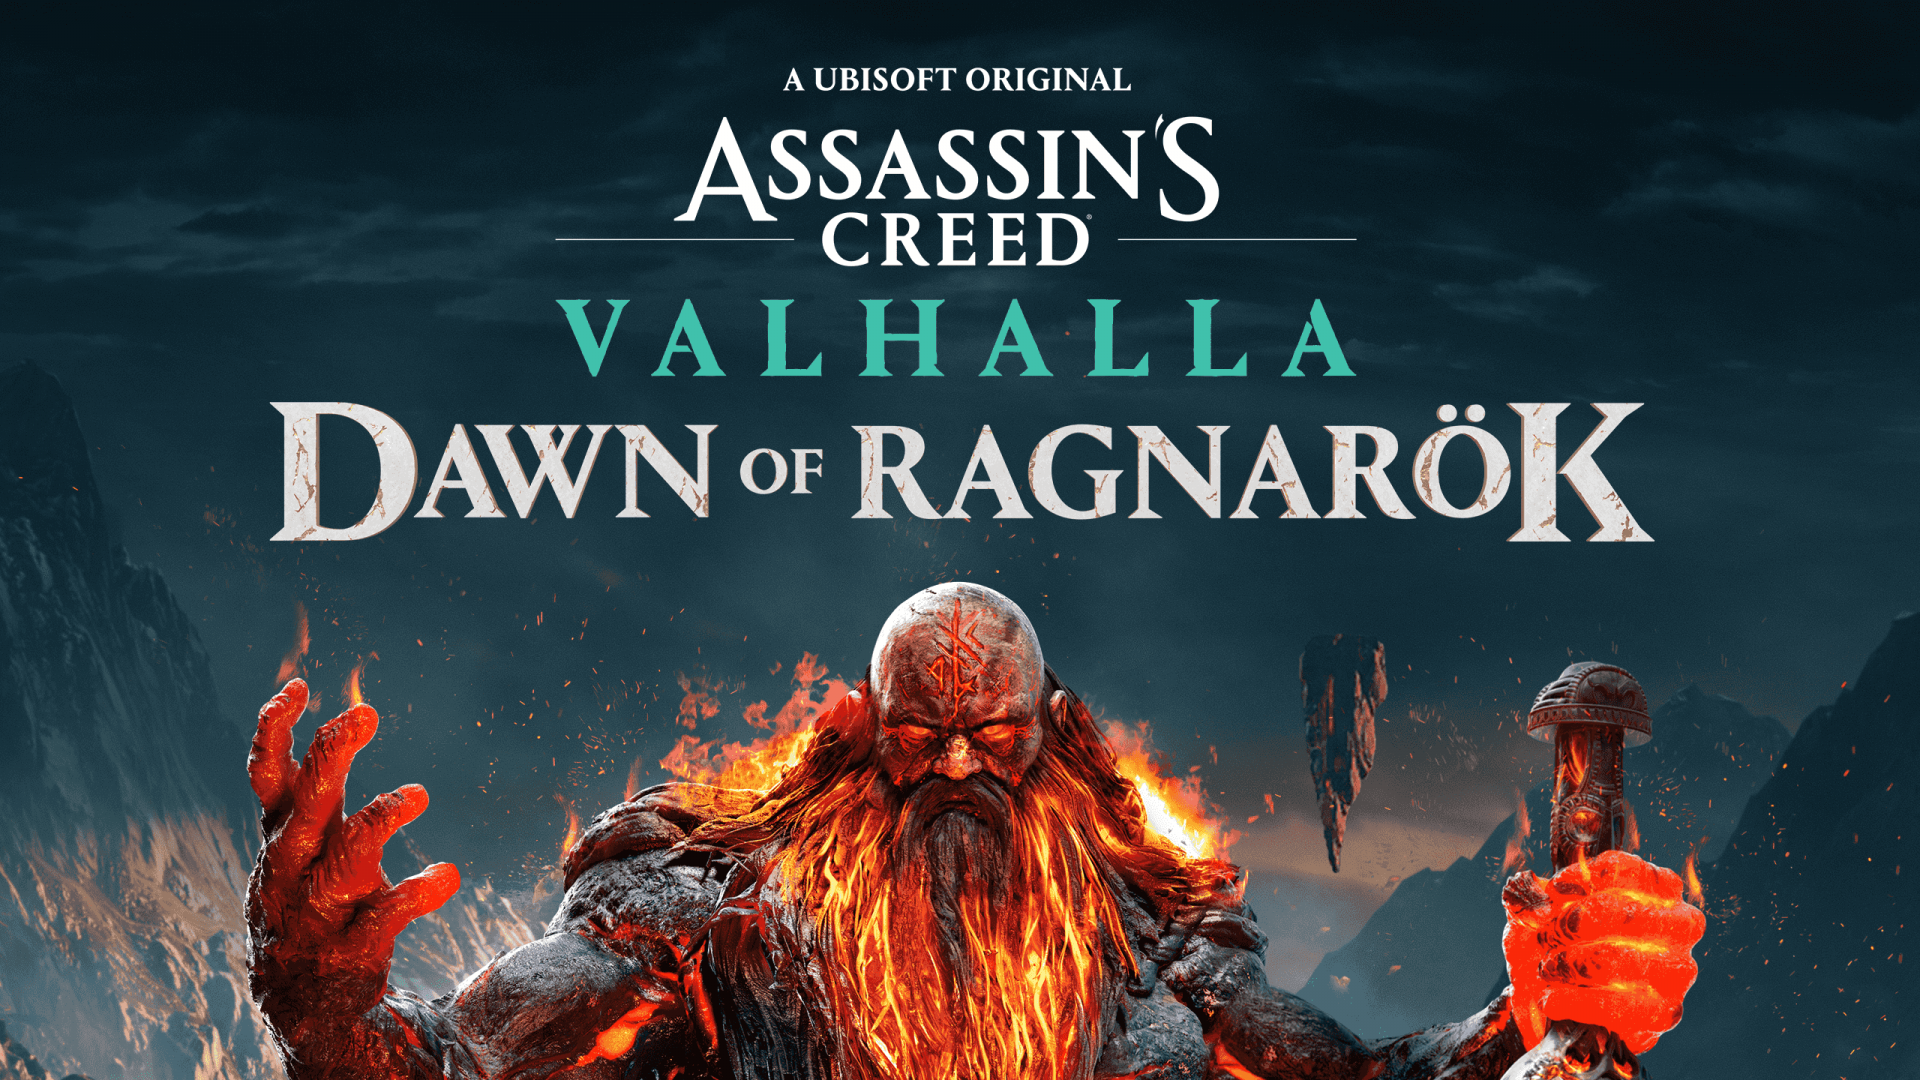 Assassin's creed Valhalla Dawn of Ragnarok